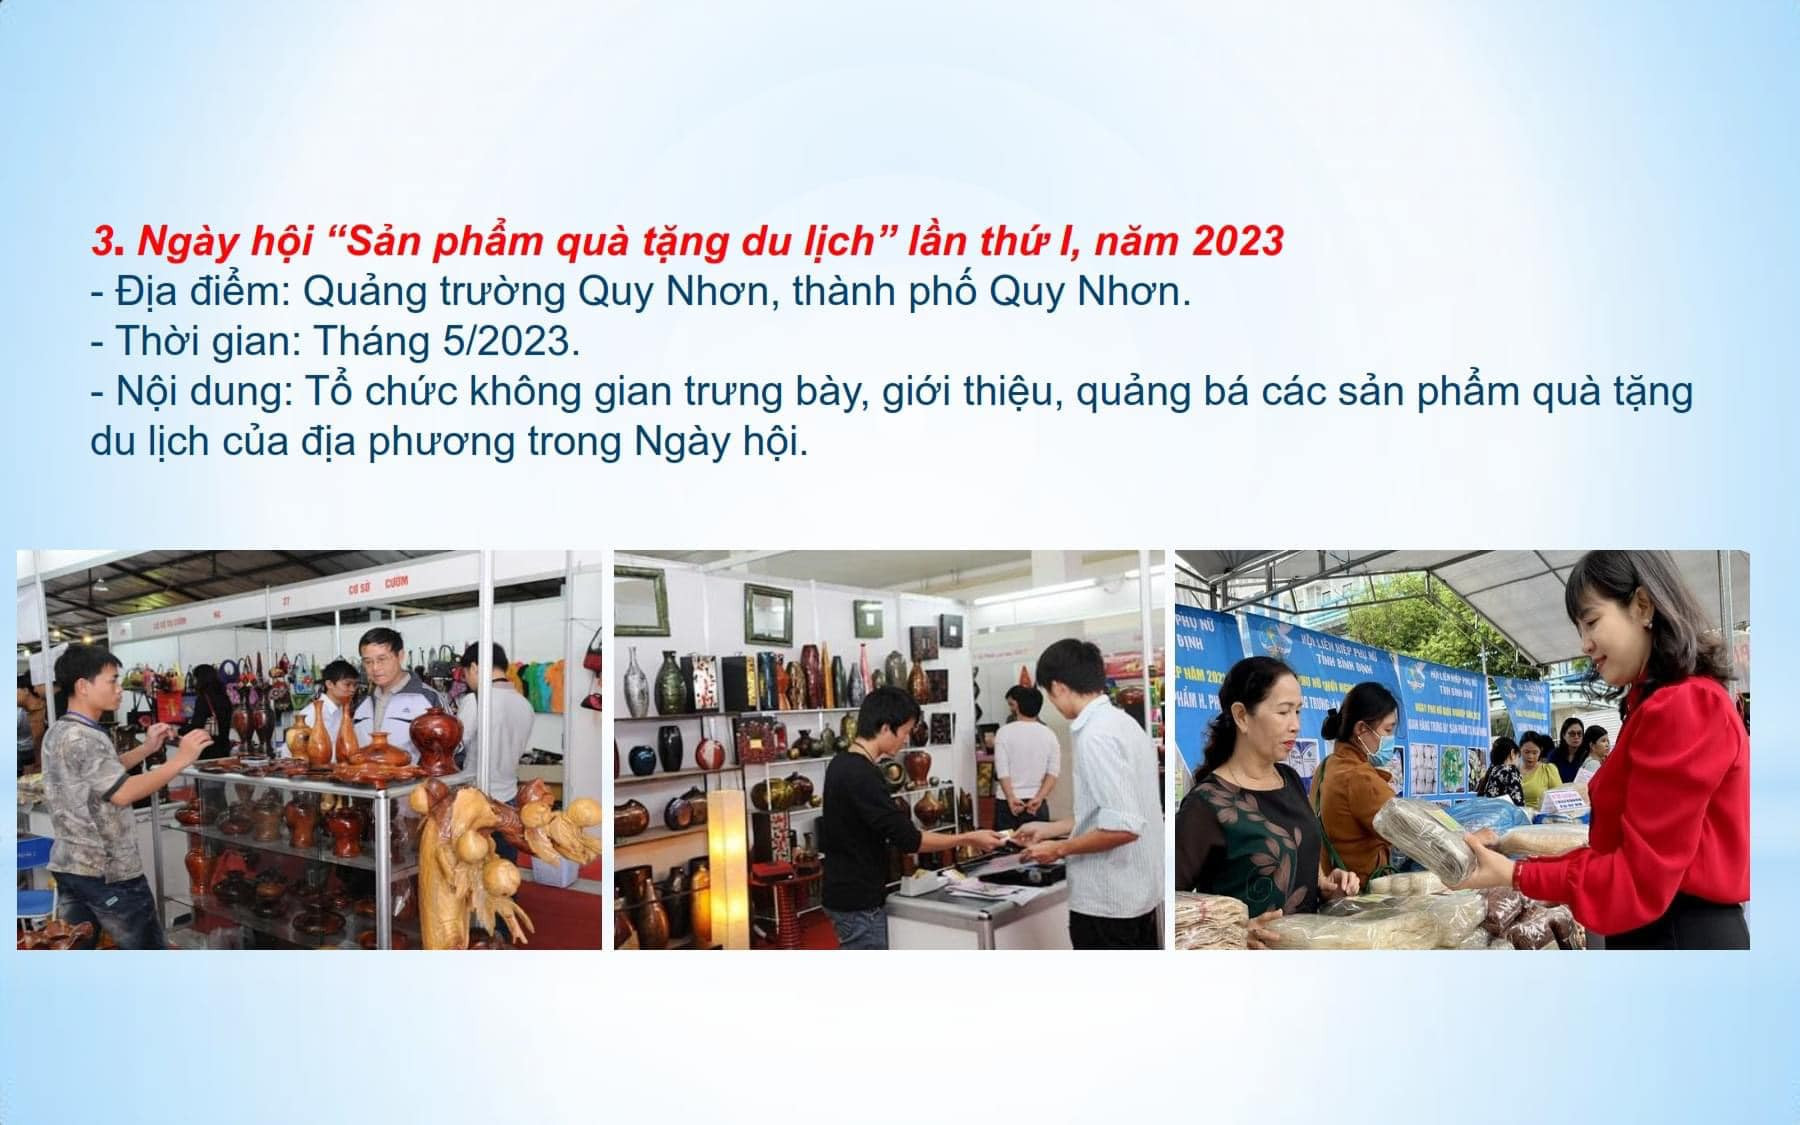 16 sự kiện, lễ hội văn hóa, thể thao, du lịch,... Bình Định năm 2023.